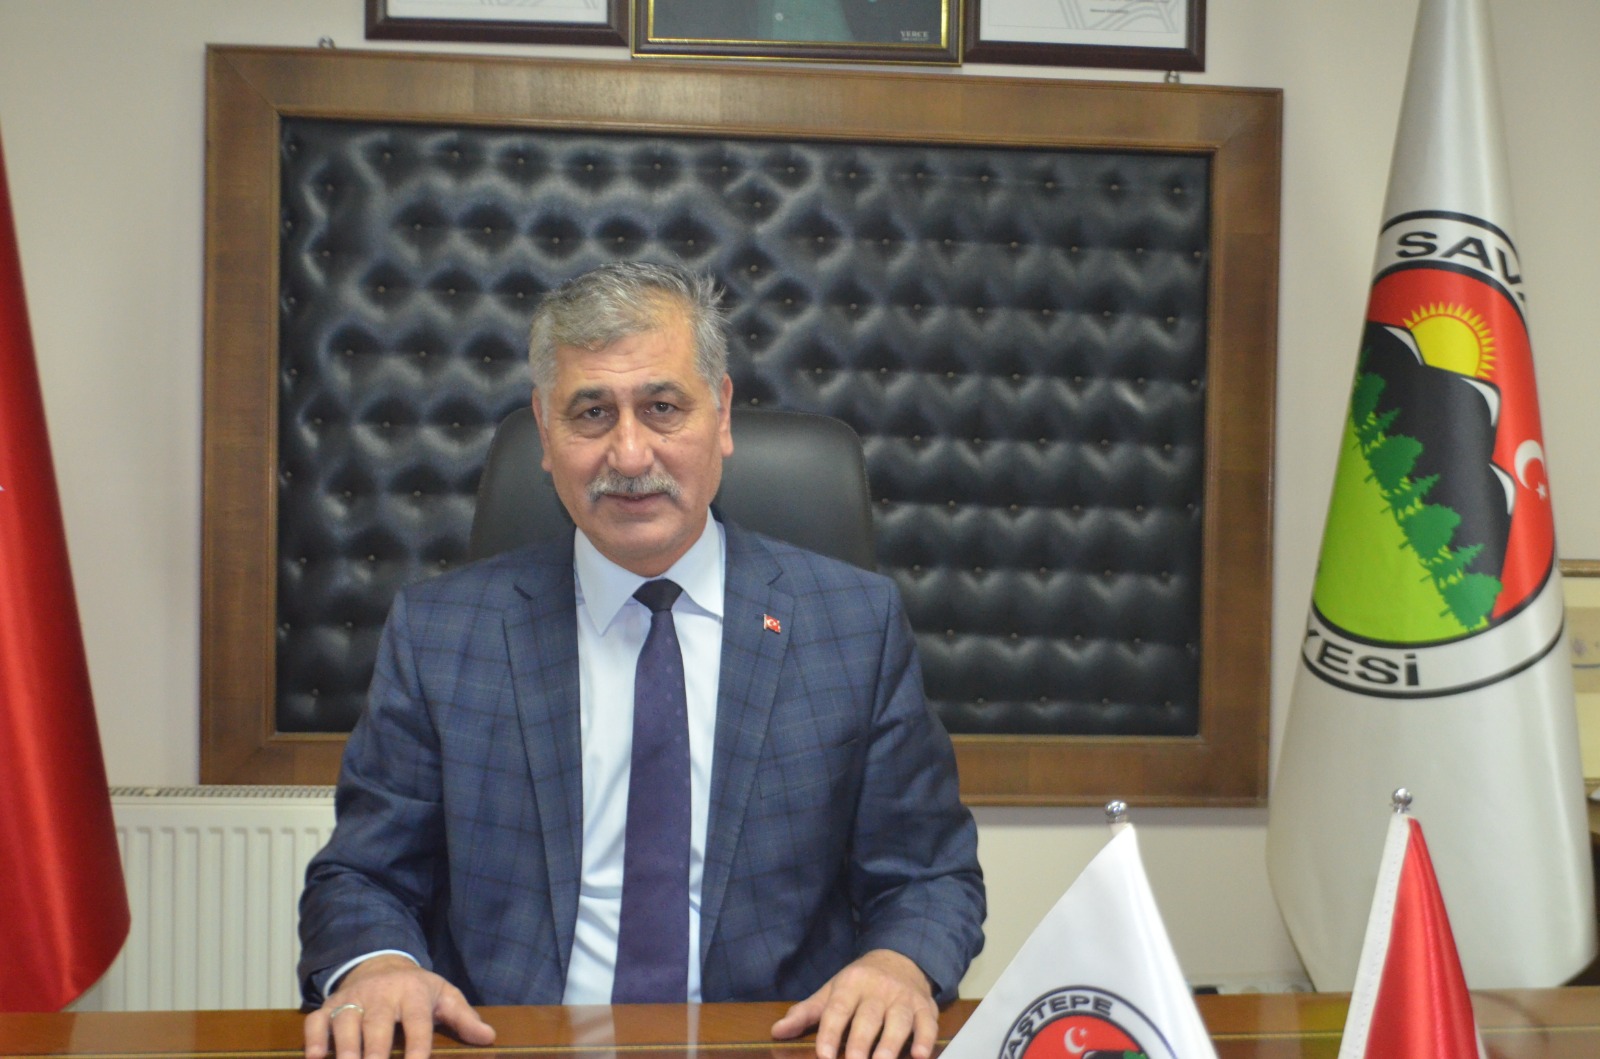 AKP’li belediye başkanı koronavirüse yakalandı